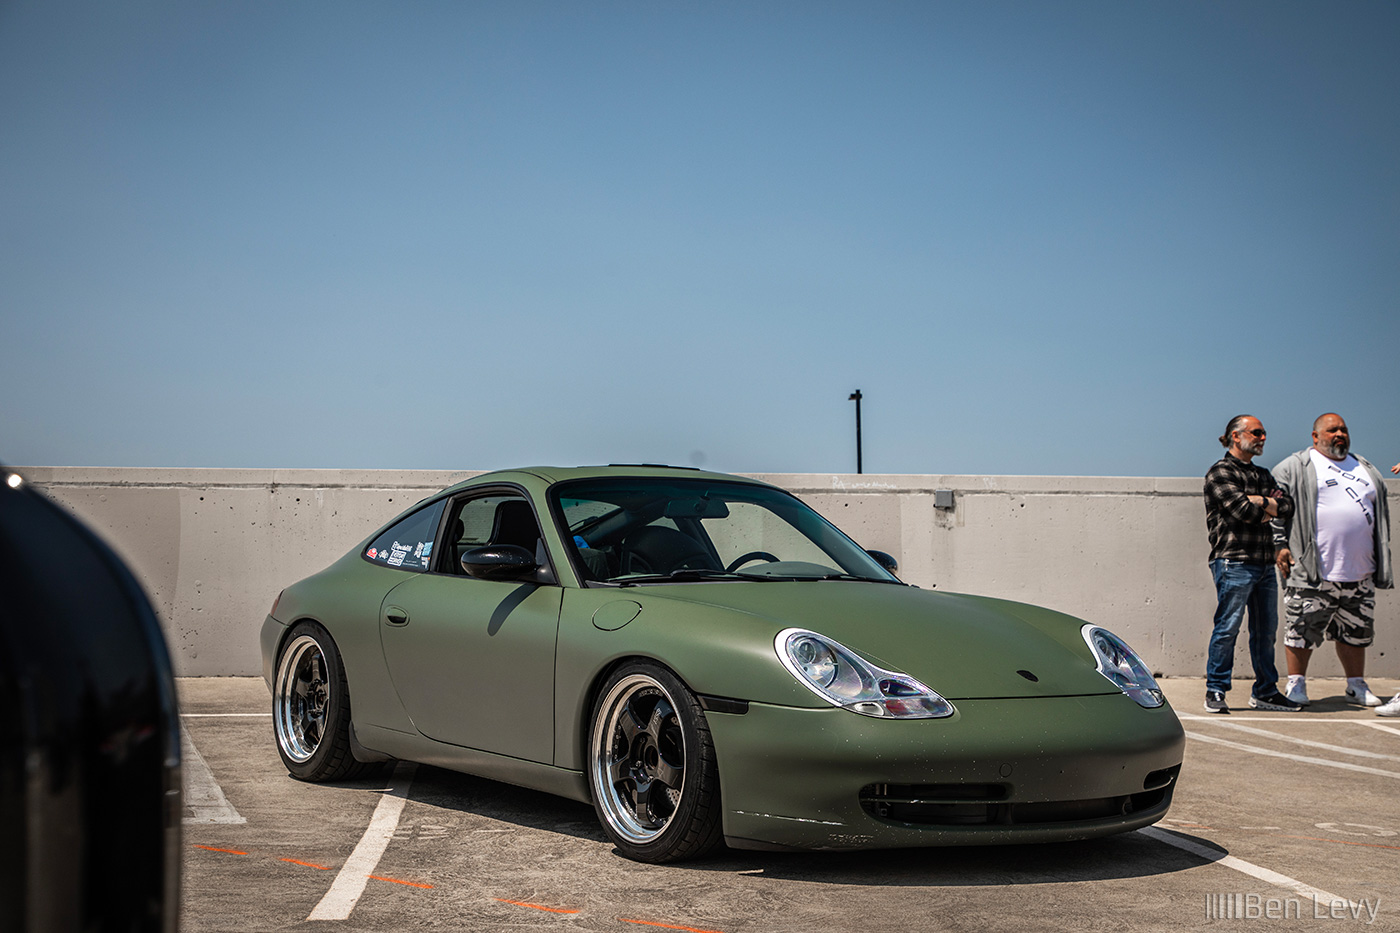 Army Green Wrap on Porsche 911